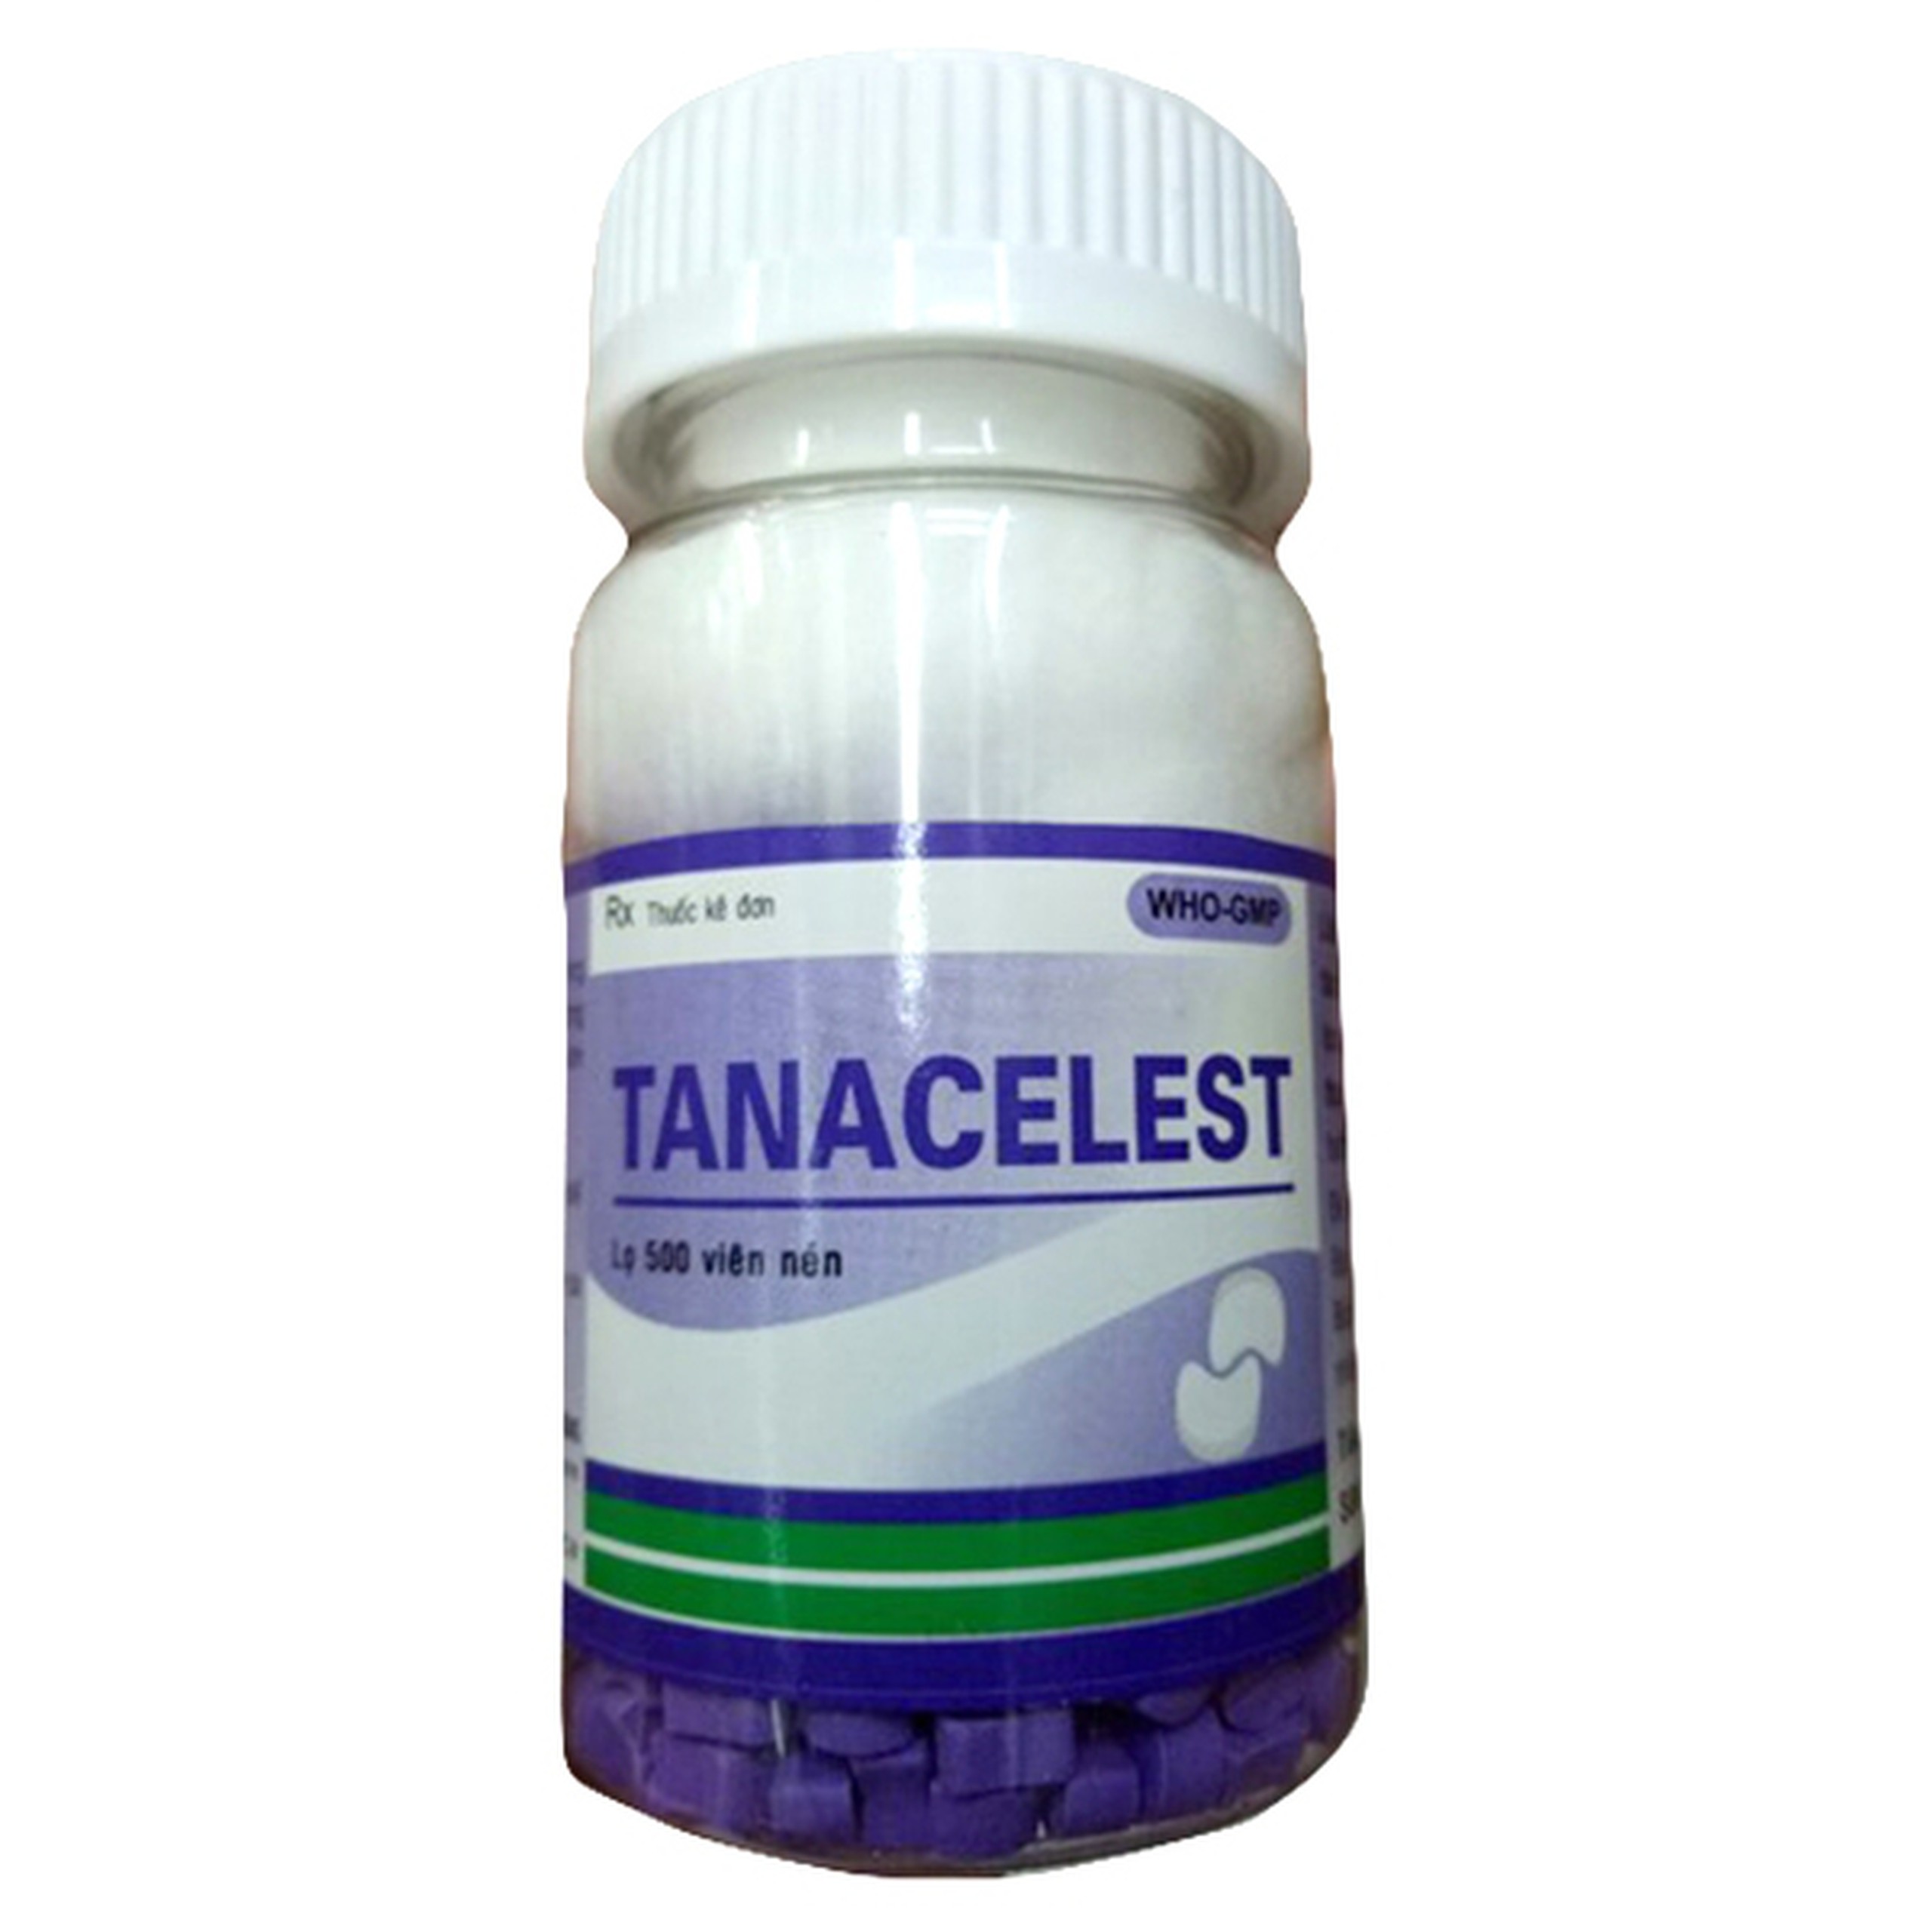 Thuốc Tanacelest 2mg Thành Nam điều trị dị ứng, viêm da (2 vỉ x 15 viên)